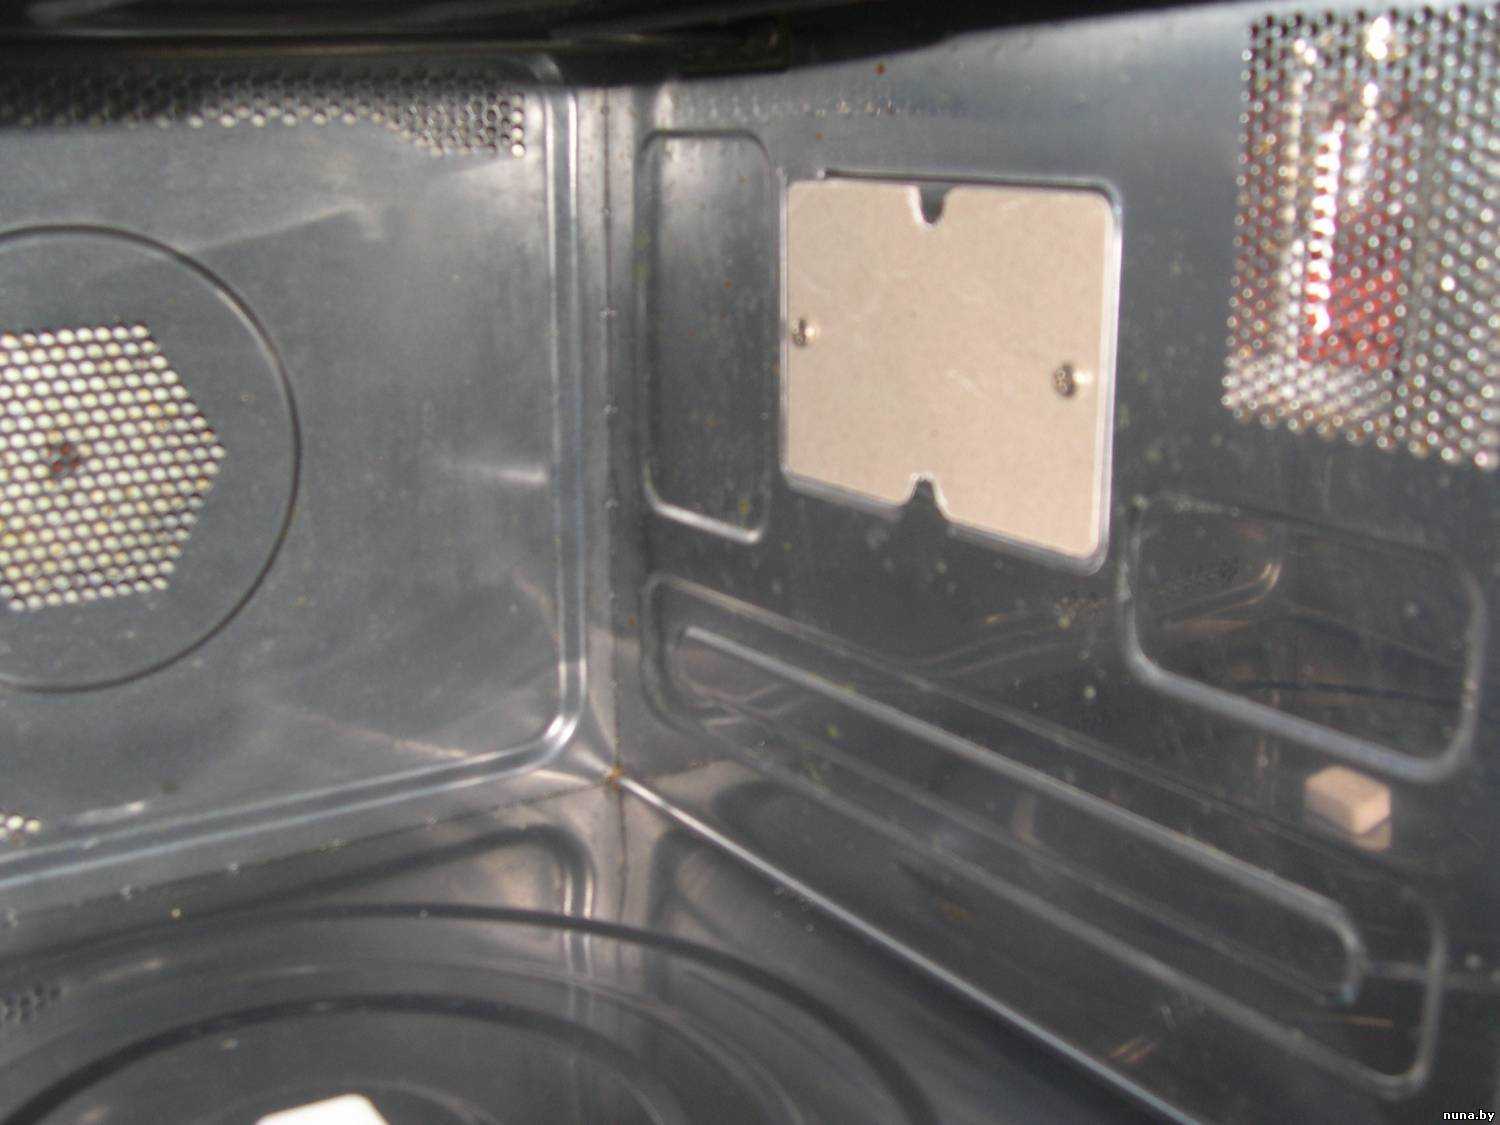 В микроволновке прогорела слюдяная пластина: чем ее заменить?